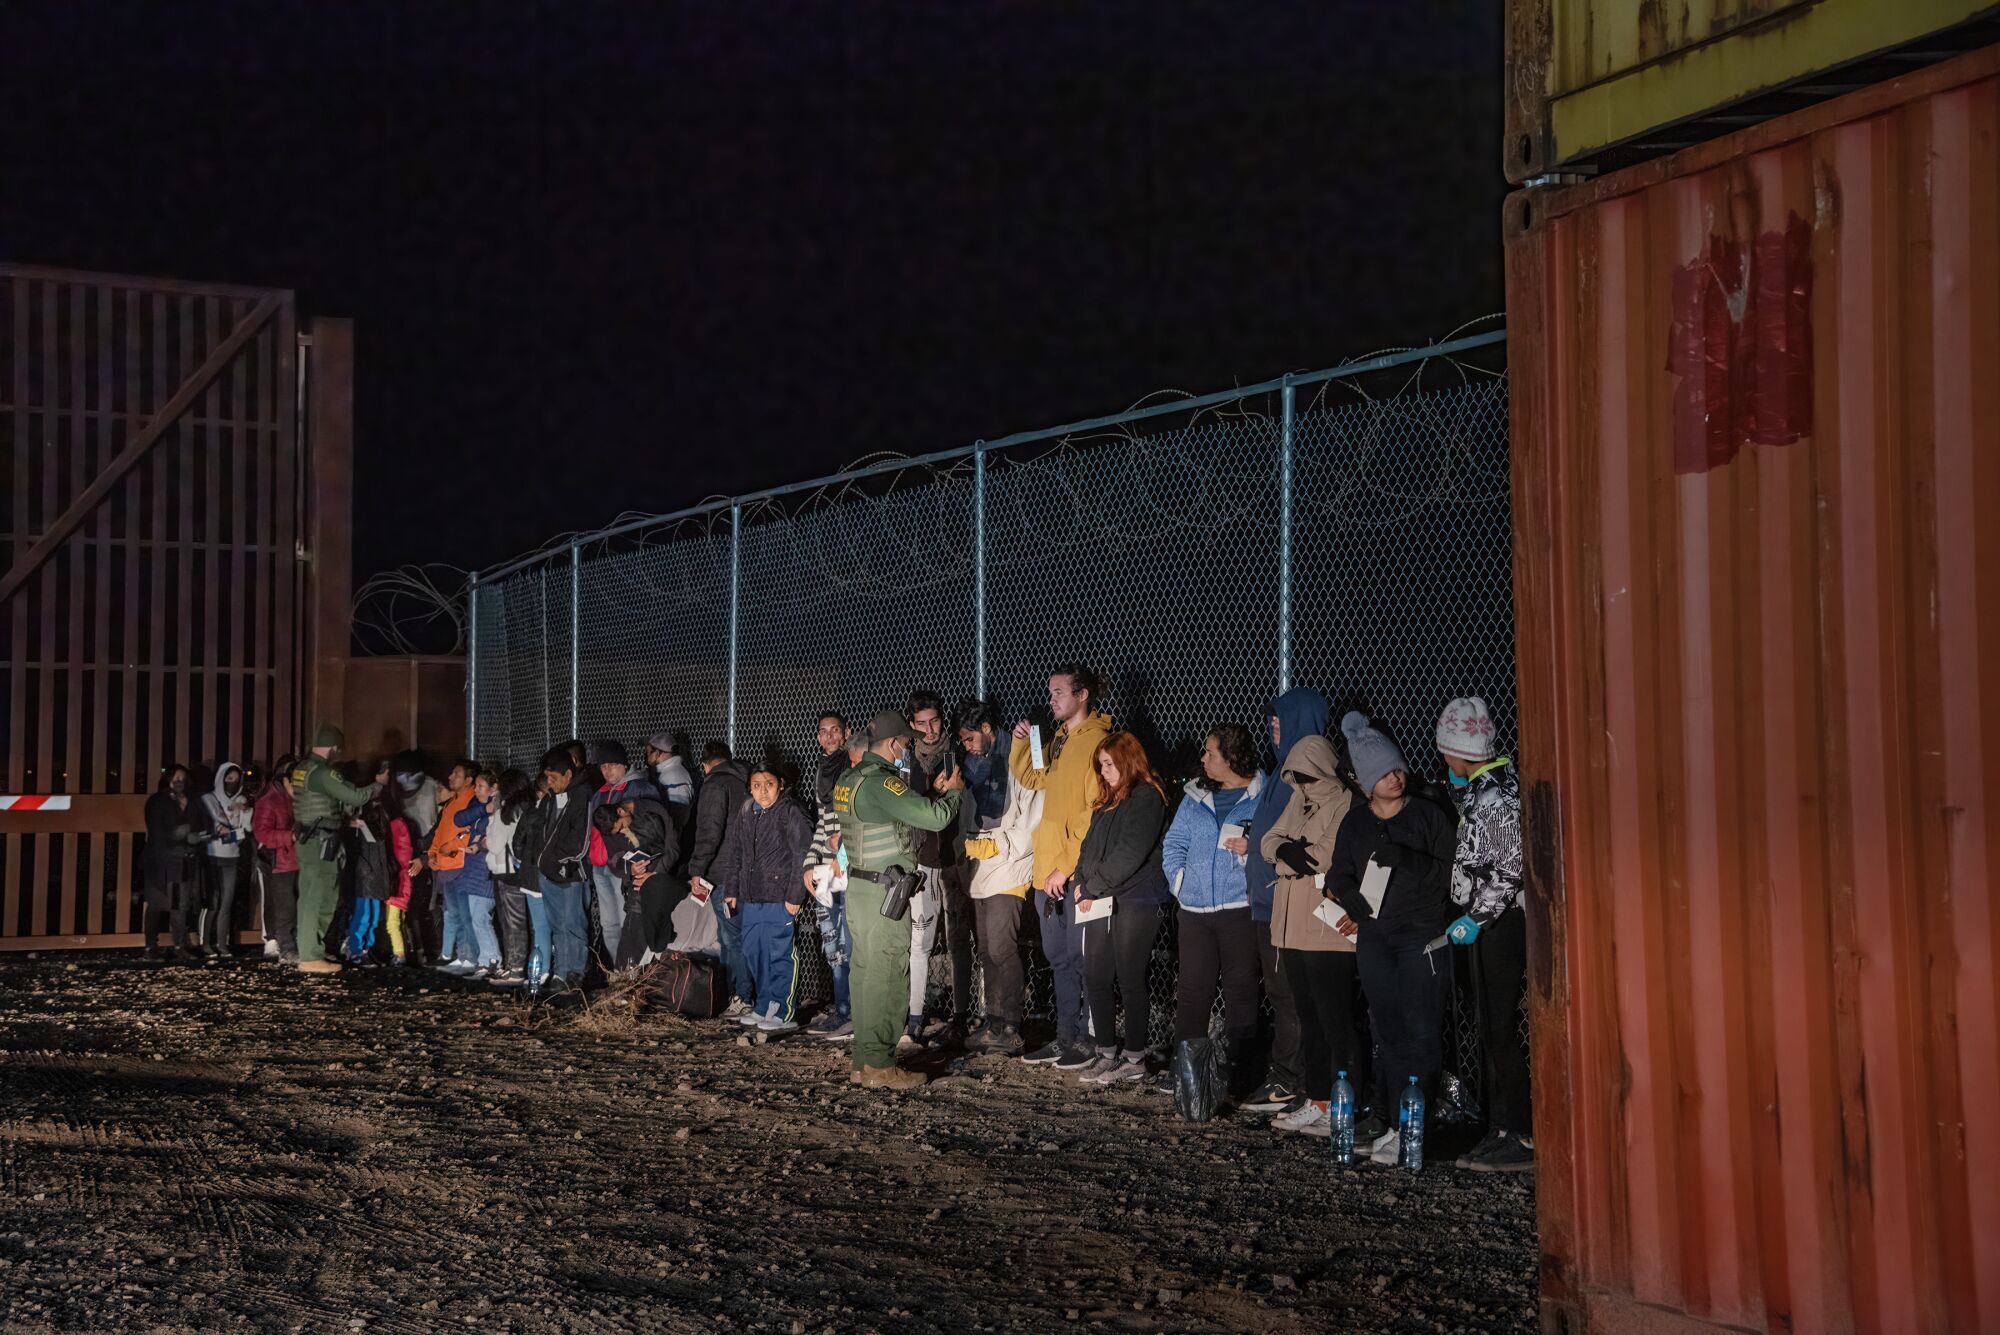 İki ABD Sınır Devriyesi ajanı, Meksika/Arizona sınırını geçtikten sonra teslim olan yaklaşık 100 kişinin bir bölümünü fotoğraflıyor.